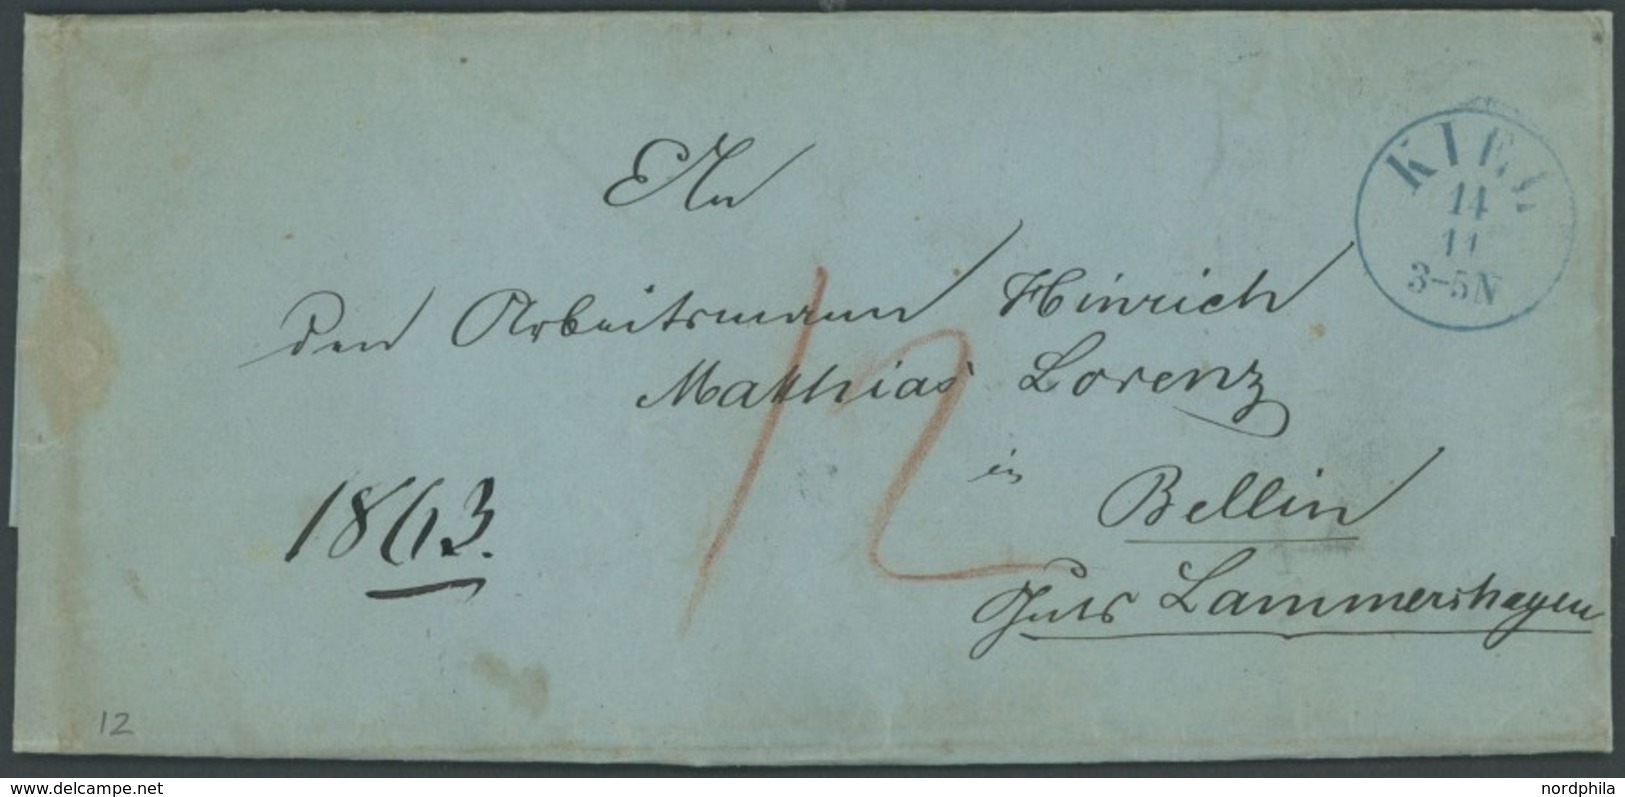 SCHLESWIG-HOLSTEIN 1863, KIEL, Blauer K1 Mit Uhrzeit! Auf Brief Nach Bellin, Rückseitiges Lacksiegel Kronshagen, Königli - Vorphilatelie